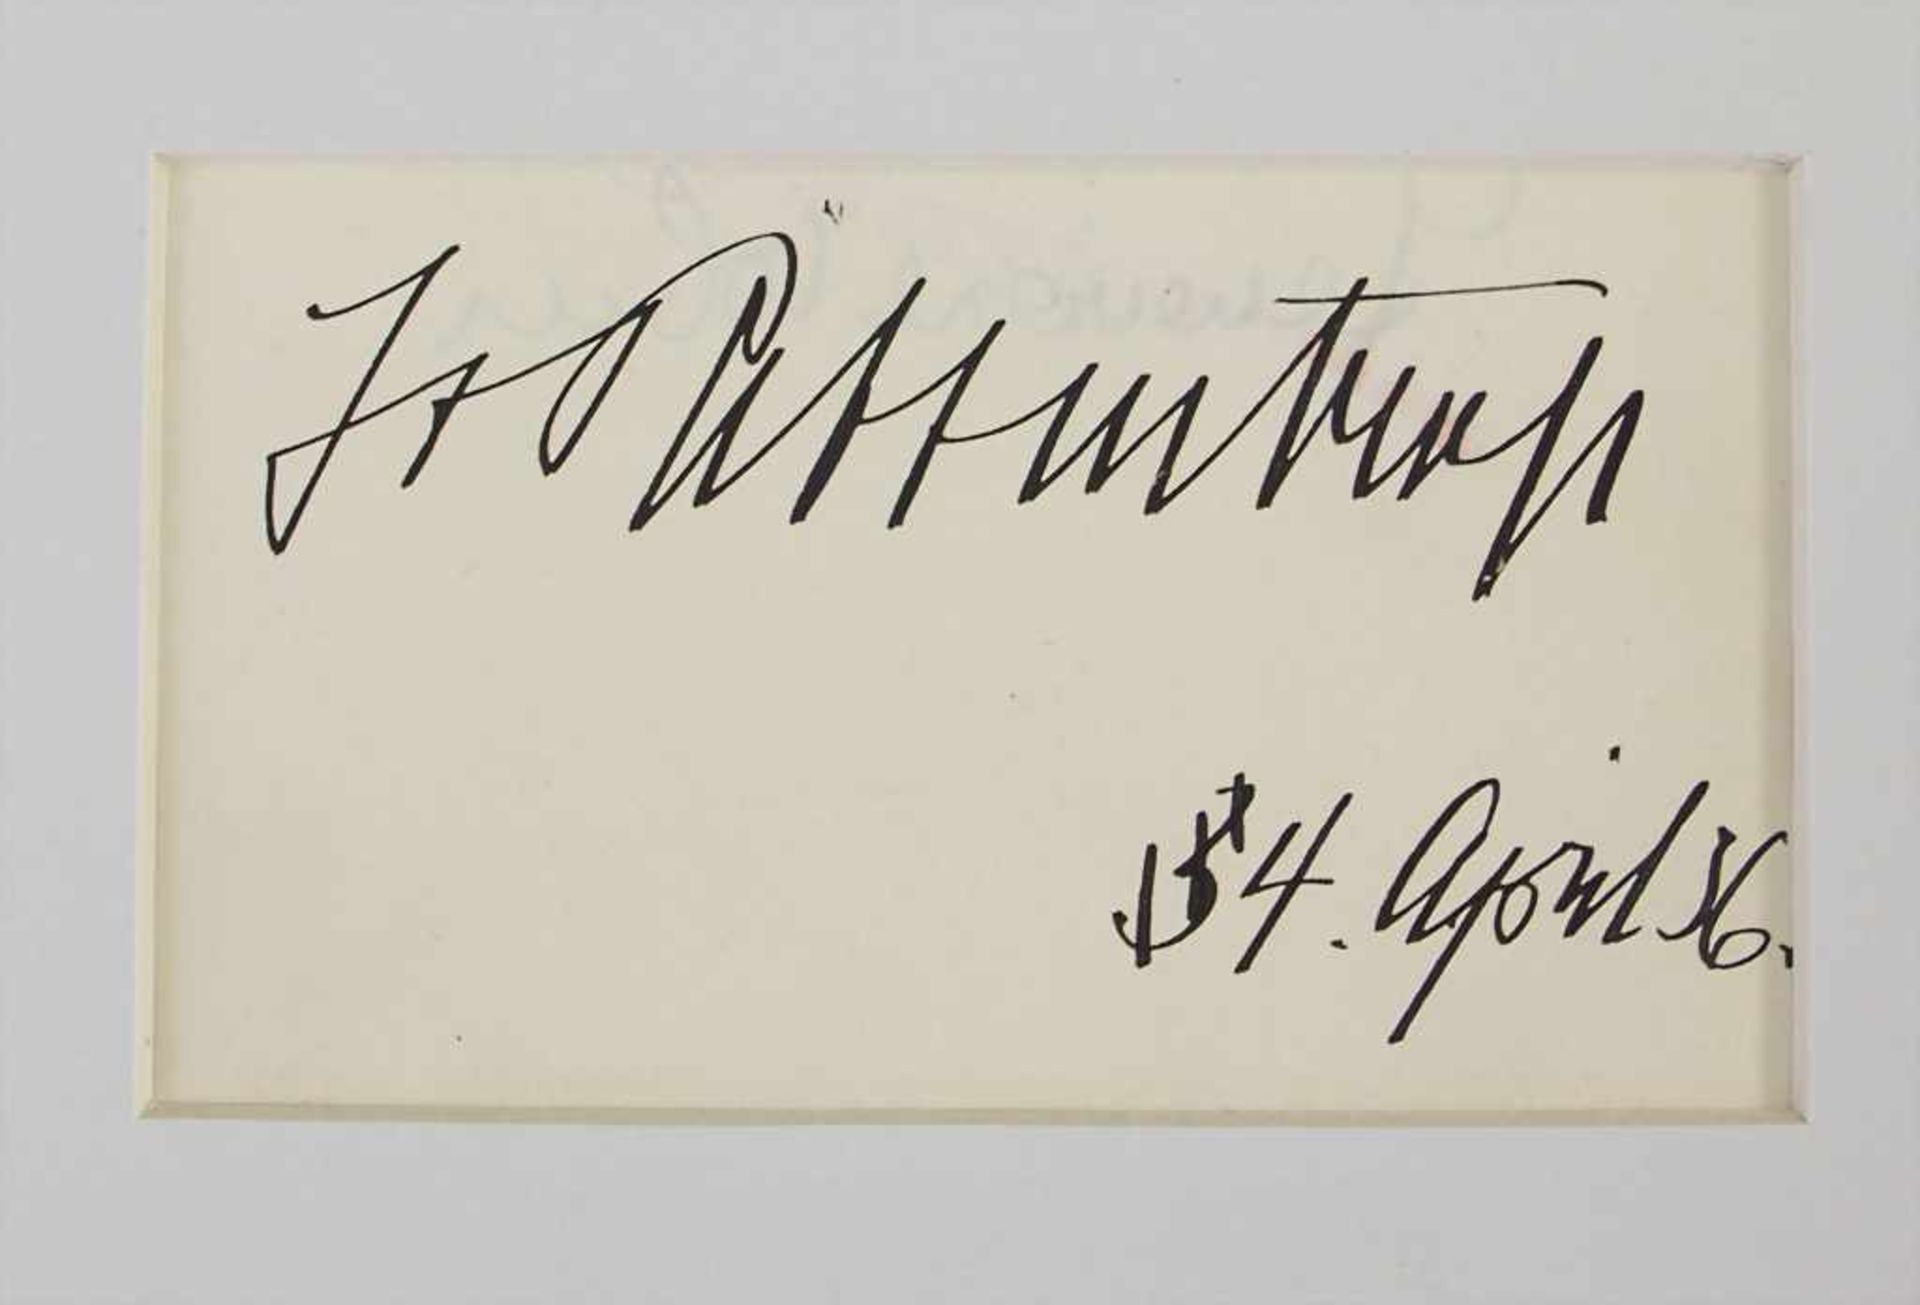 Autograph 'Joachim von Ribbentrop' / An autograph 'Joachim von Ribbentrop', 1934Eigenh - Image 2 of 2